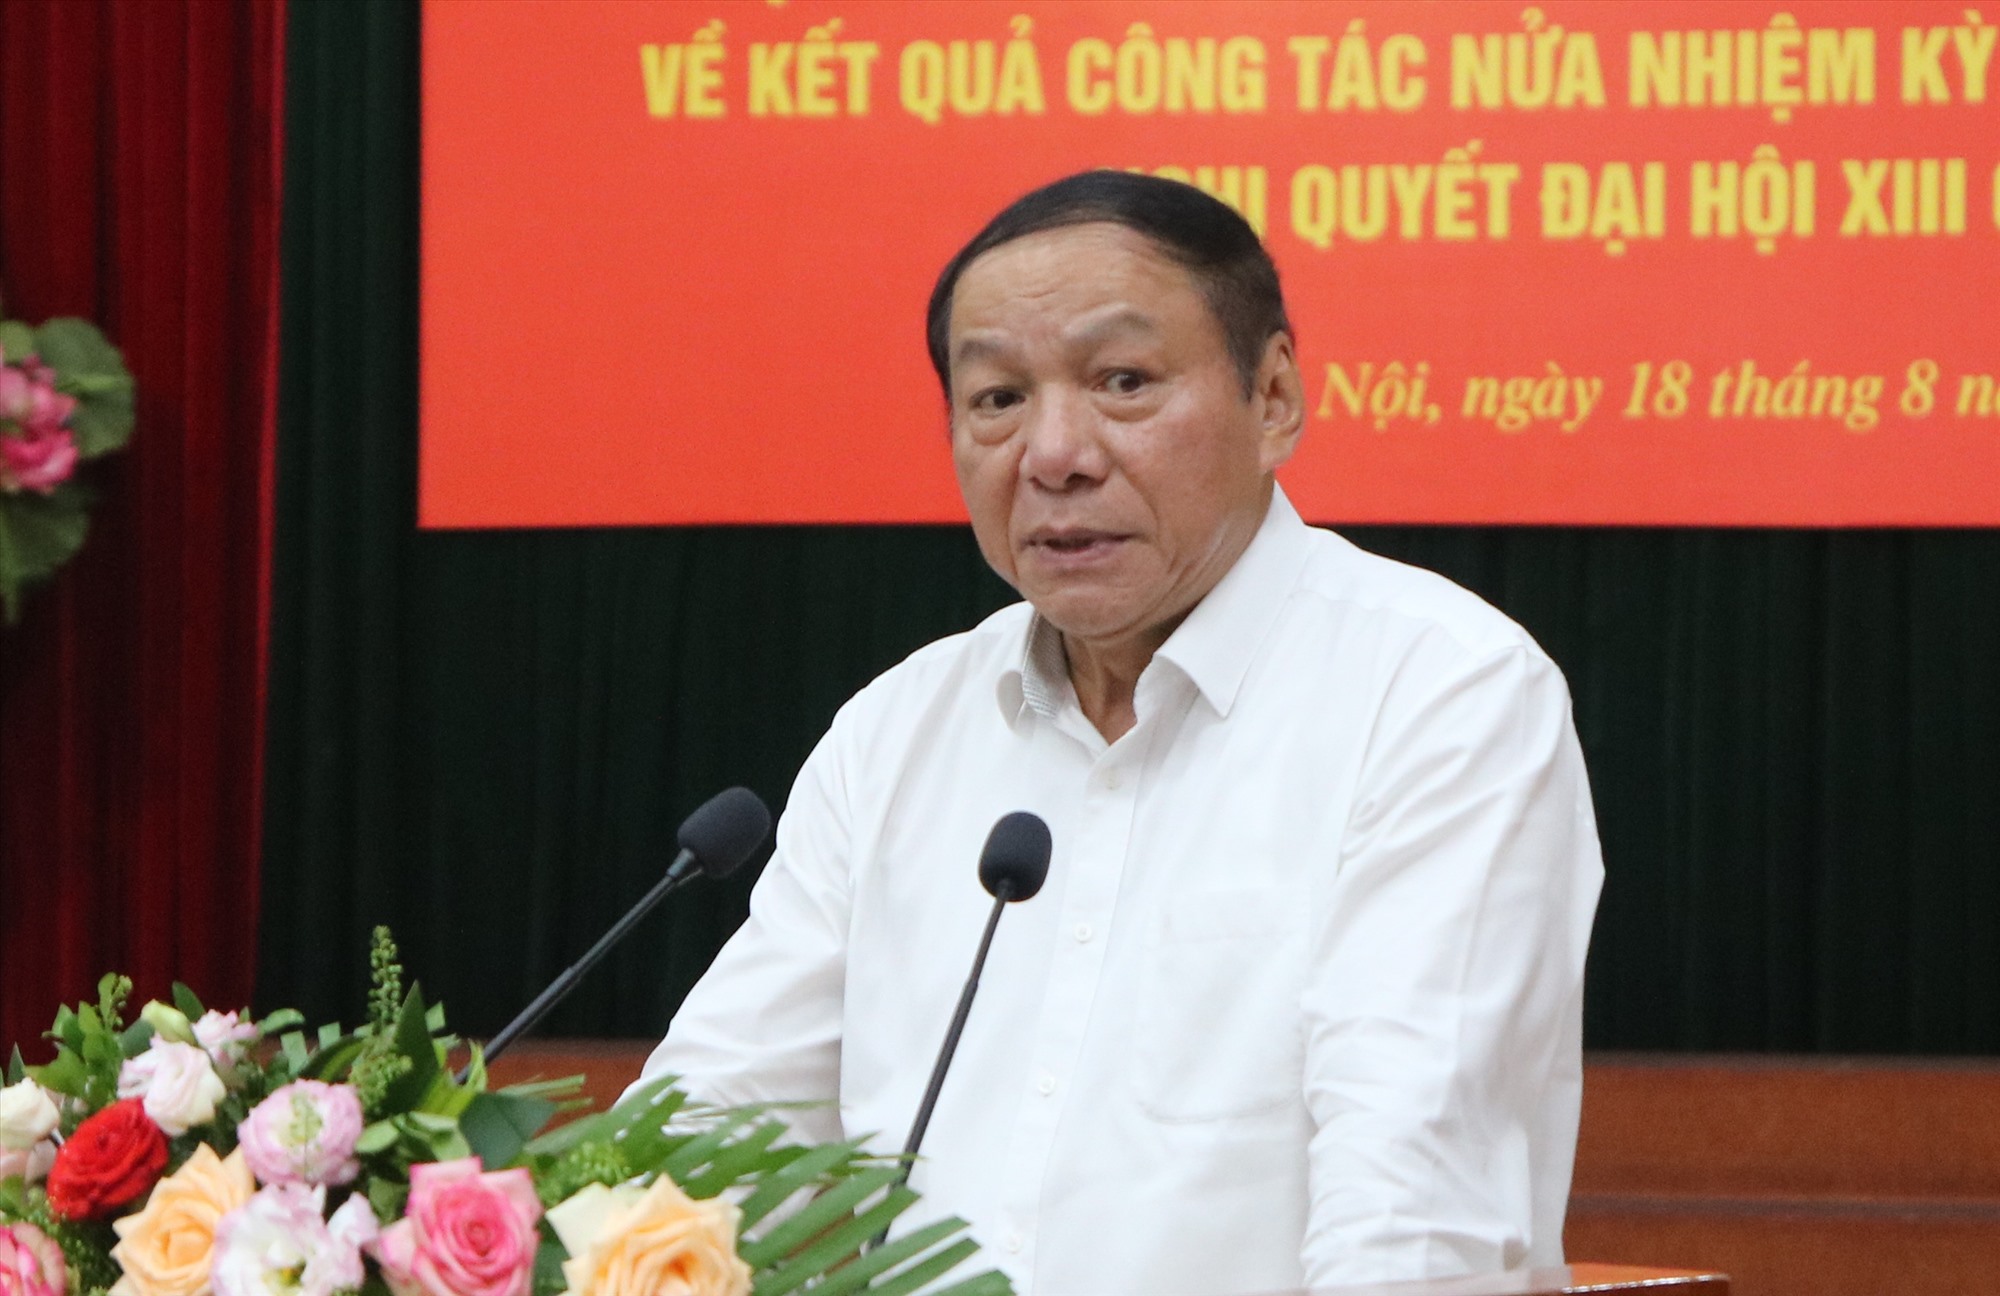 Ông Nguyễn Văn Hùng - Bộ trưởng Bộ Văn hoá Thể thao và Du lịch. Ảnh: T.Vương